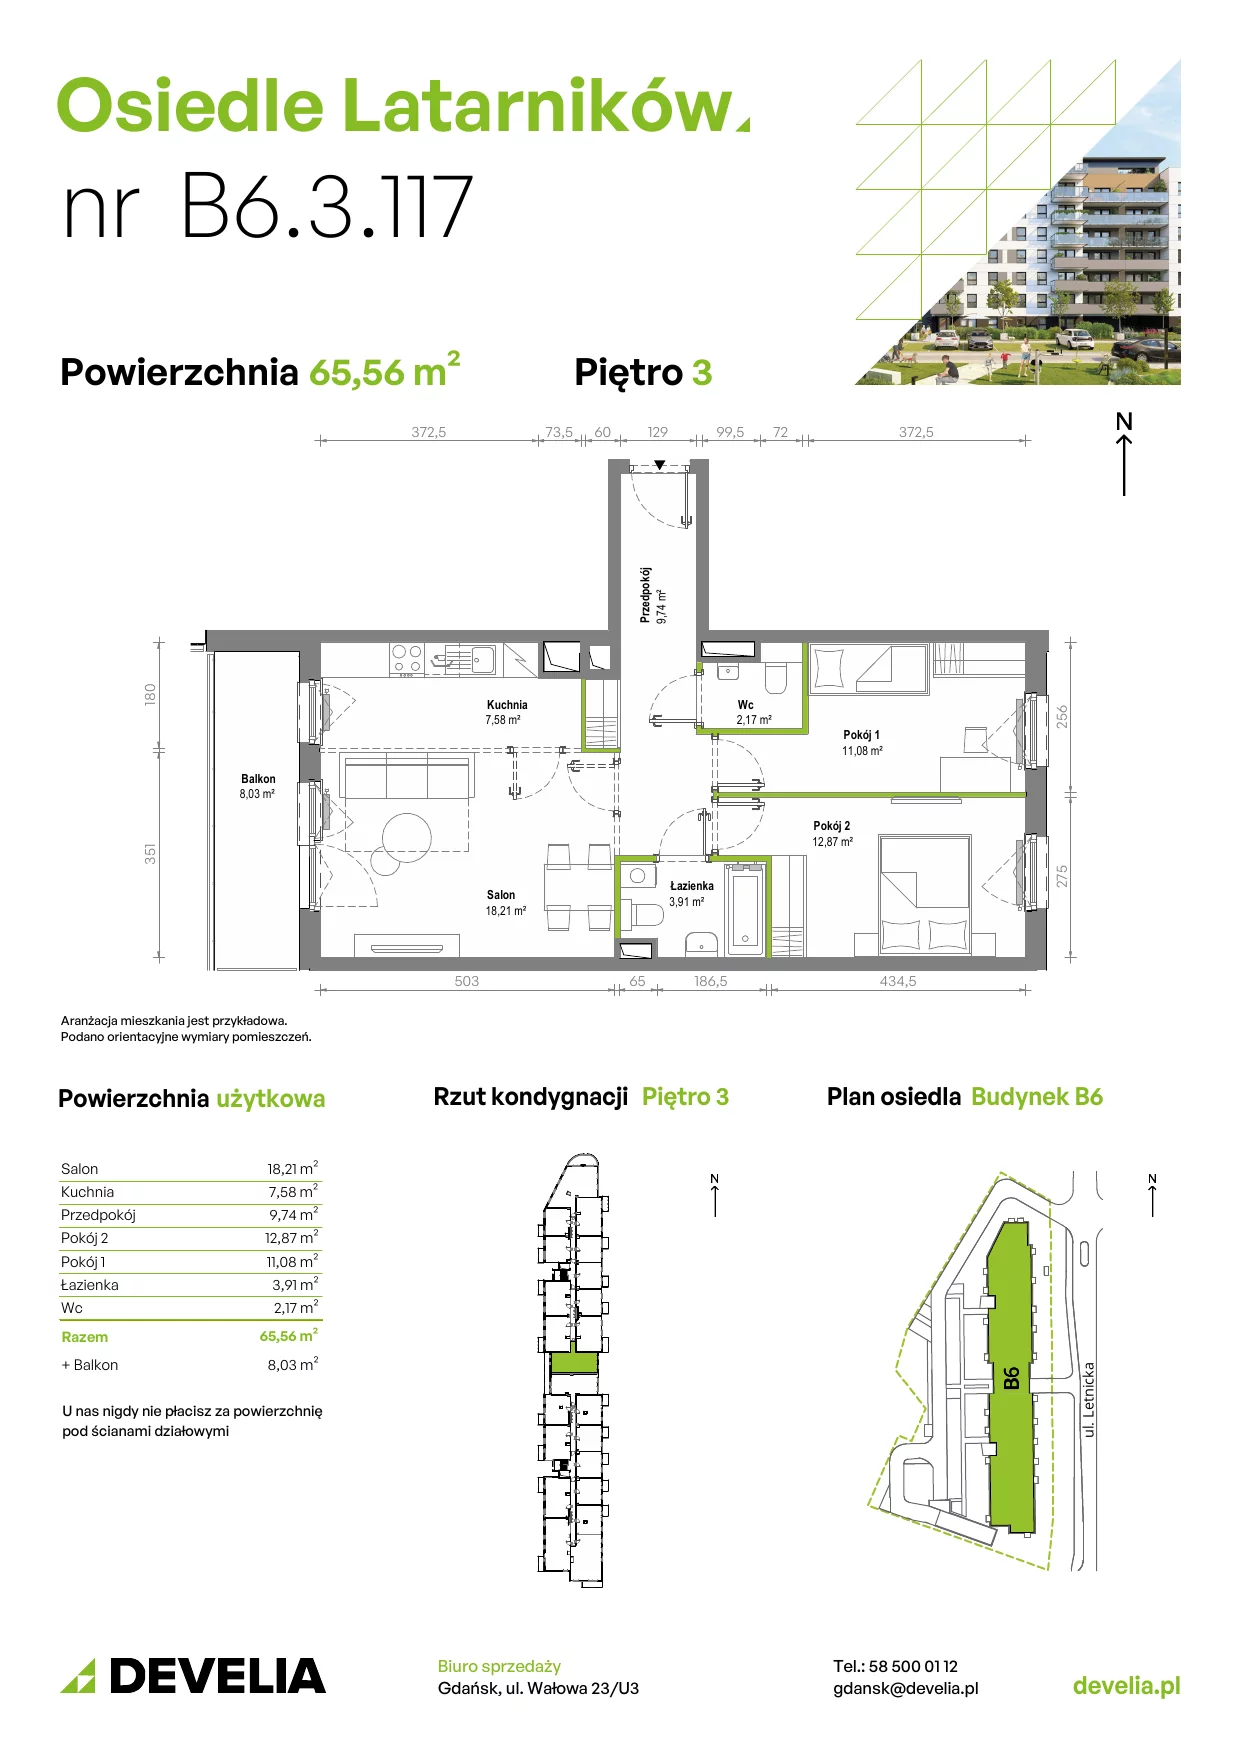 Mieszkanie 65,28 m², piętro 3, oferta nr B6.3.117, Osiedle Latarników, Gdańsk, Letnica, ul. Letnicka 1